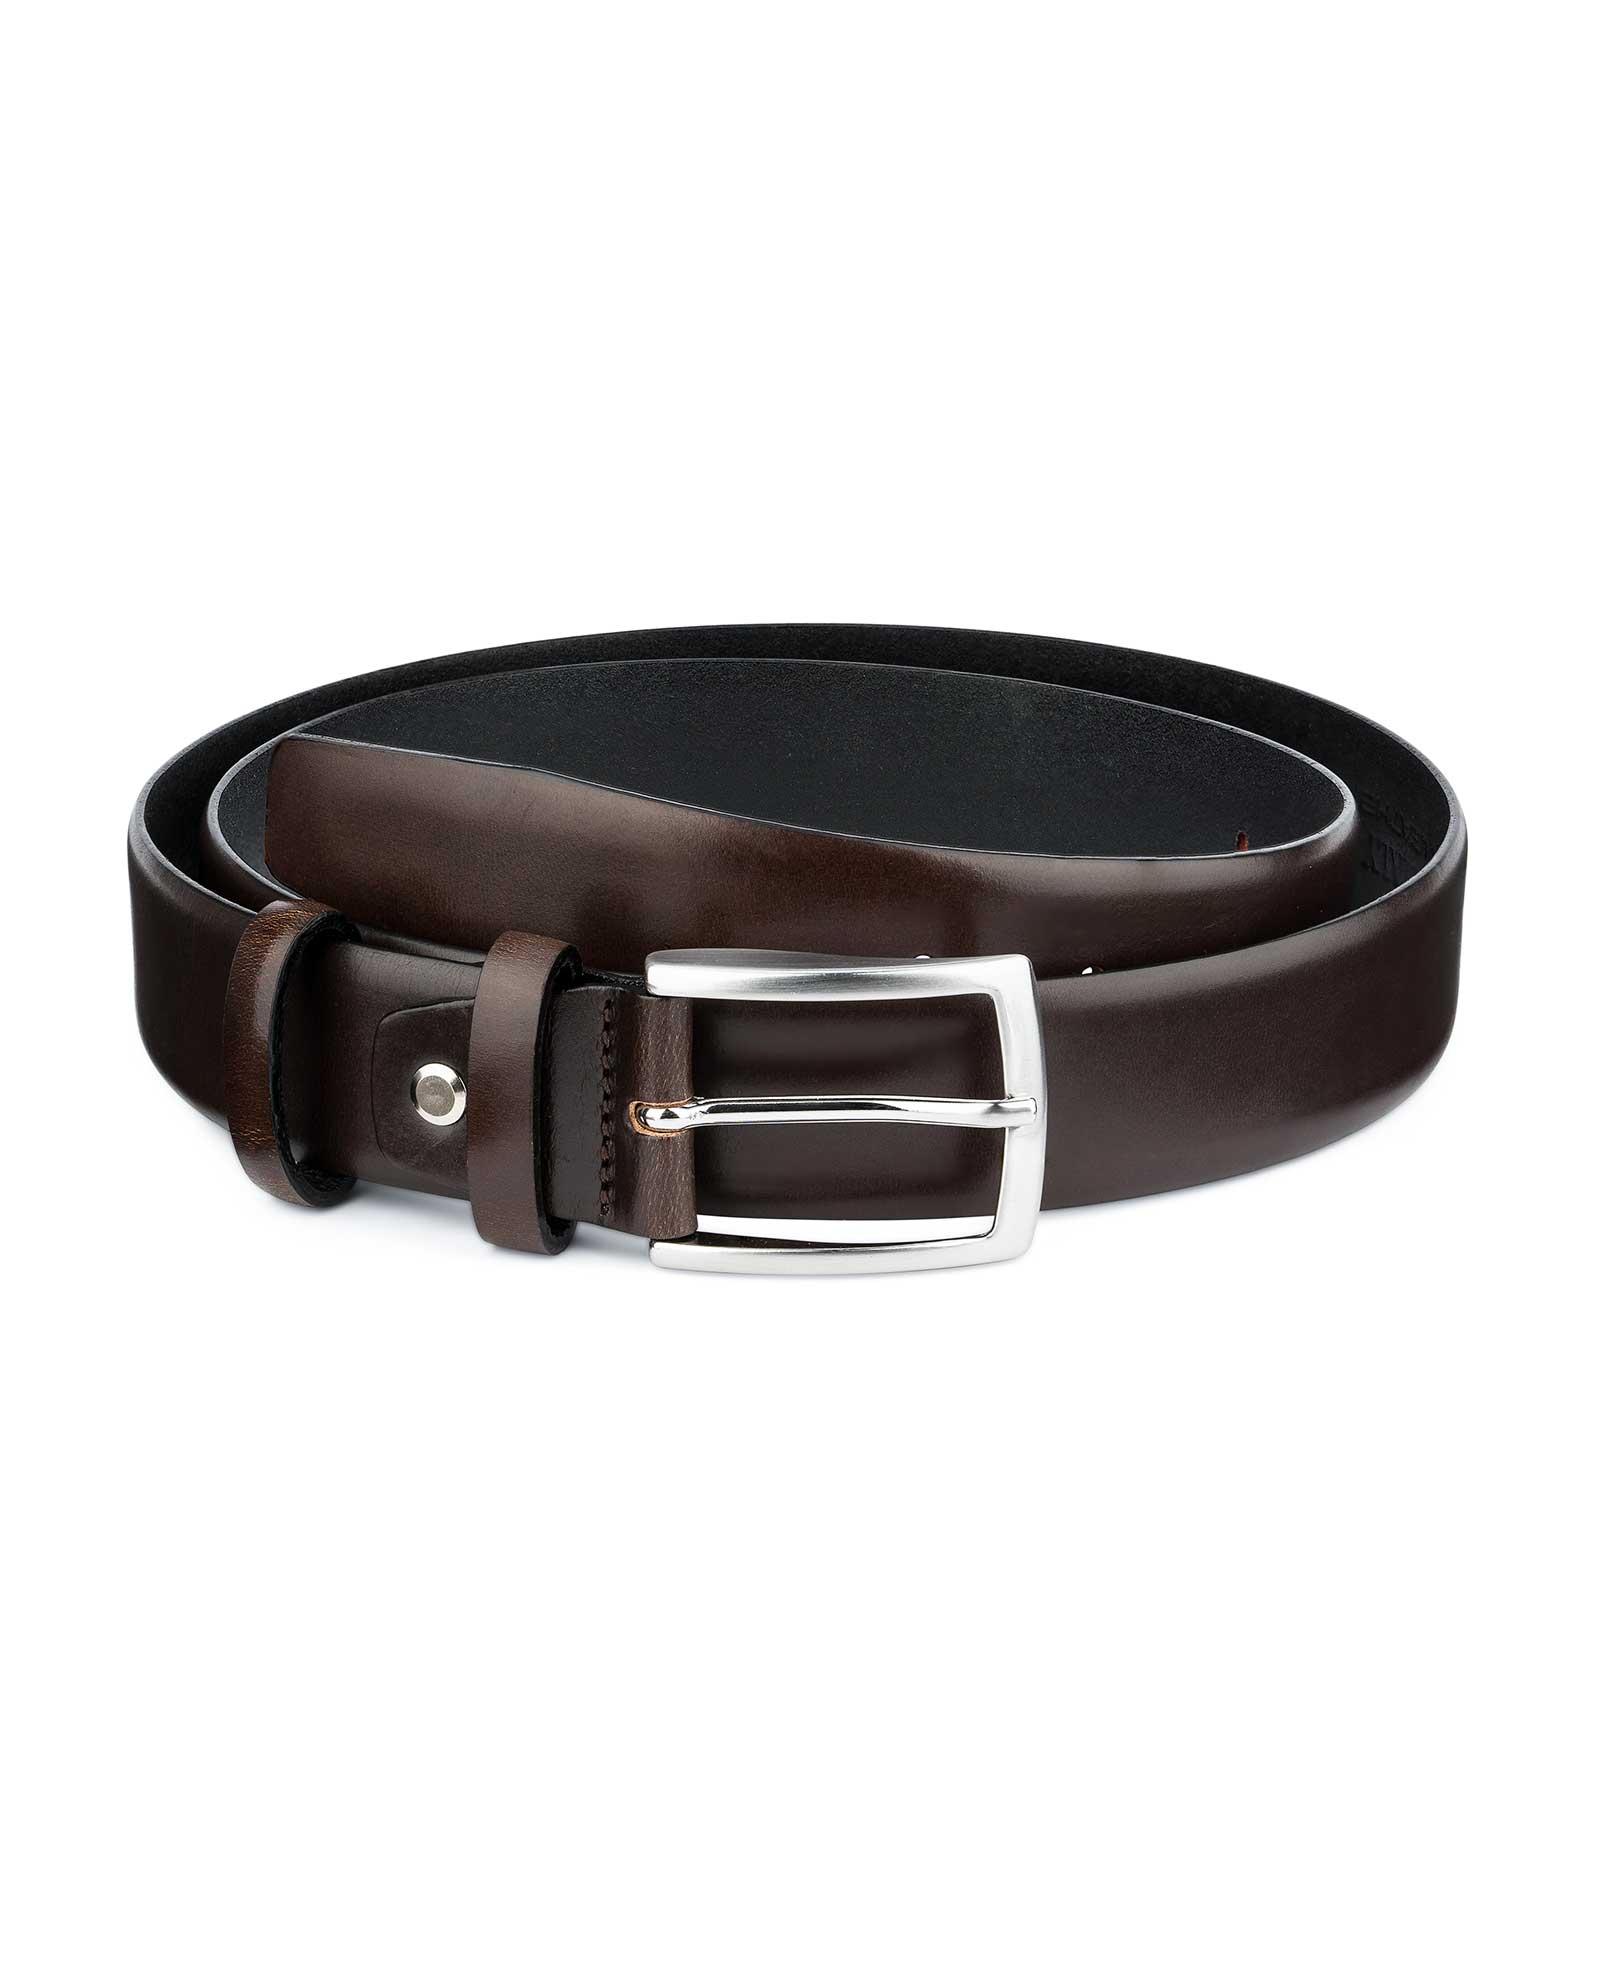 Buy Dark Brown Vegetable Tanned Leather Belt | LeatherBeltsOnline.com